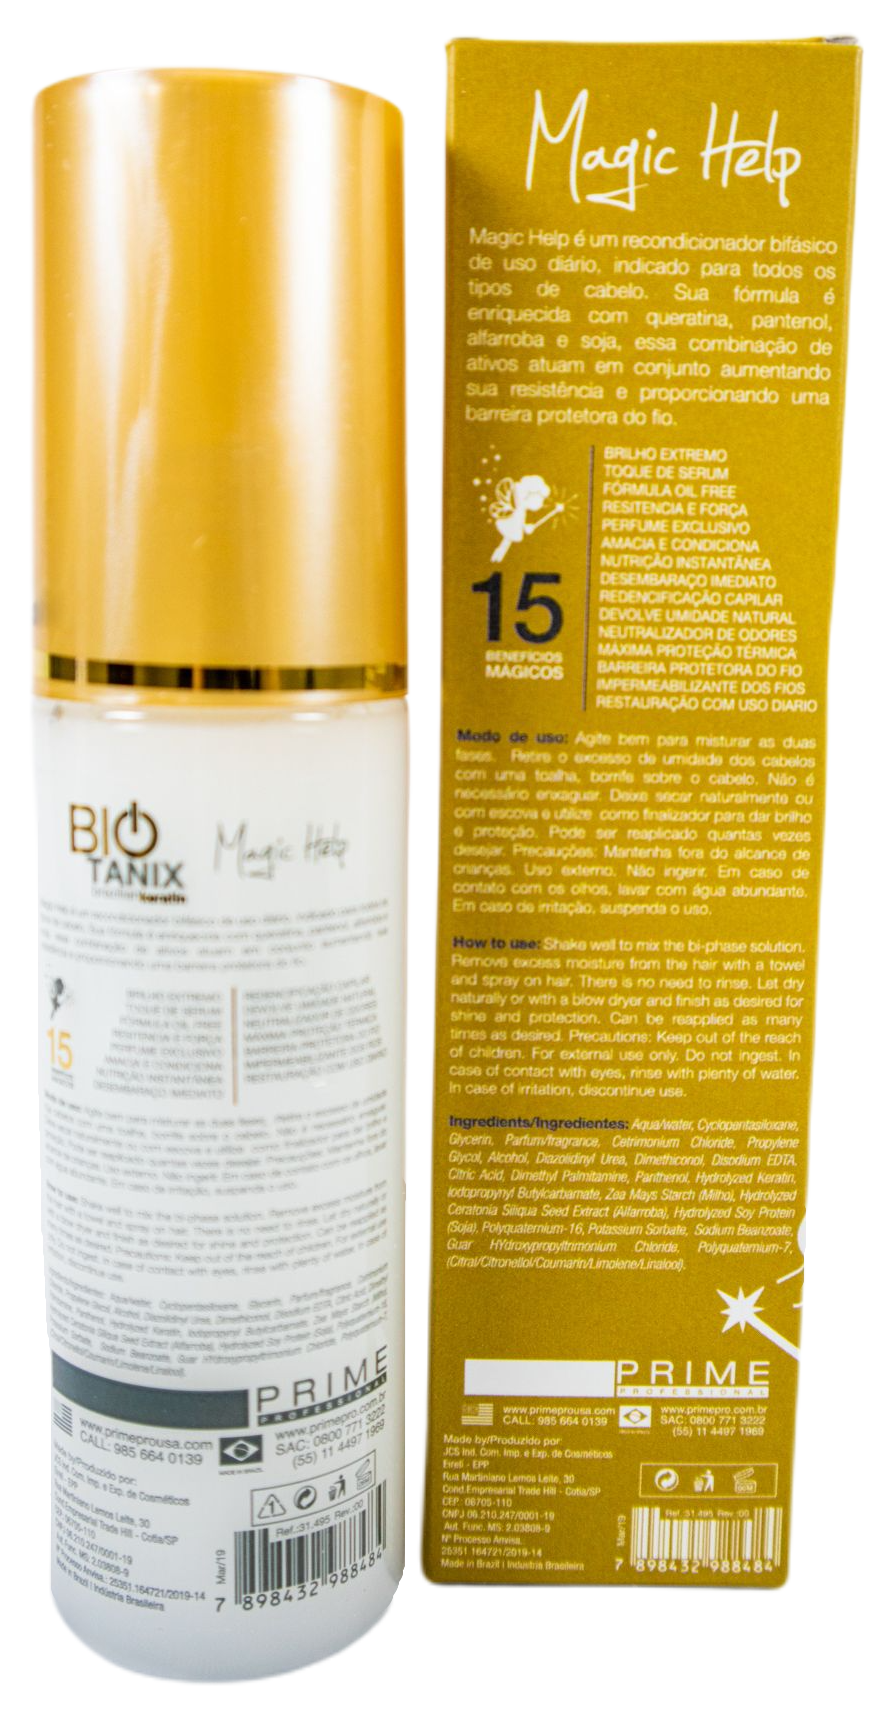 Prime Pro Extreme Hair Oil Bio Tanix Magic Help Brazilian Protein 60ml - Prime Pro